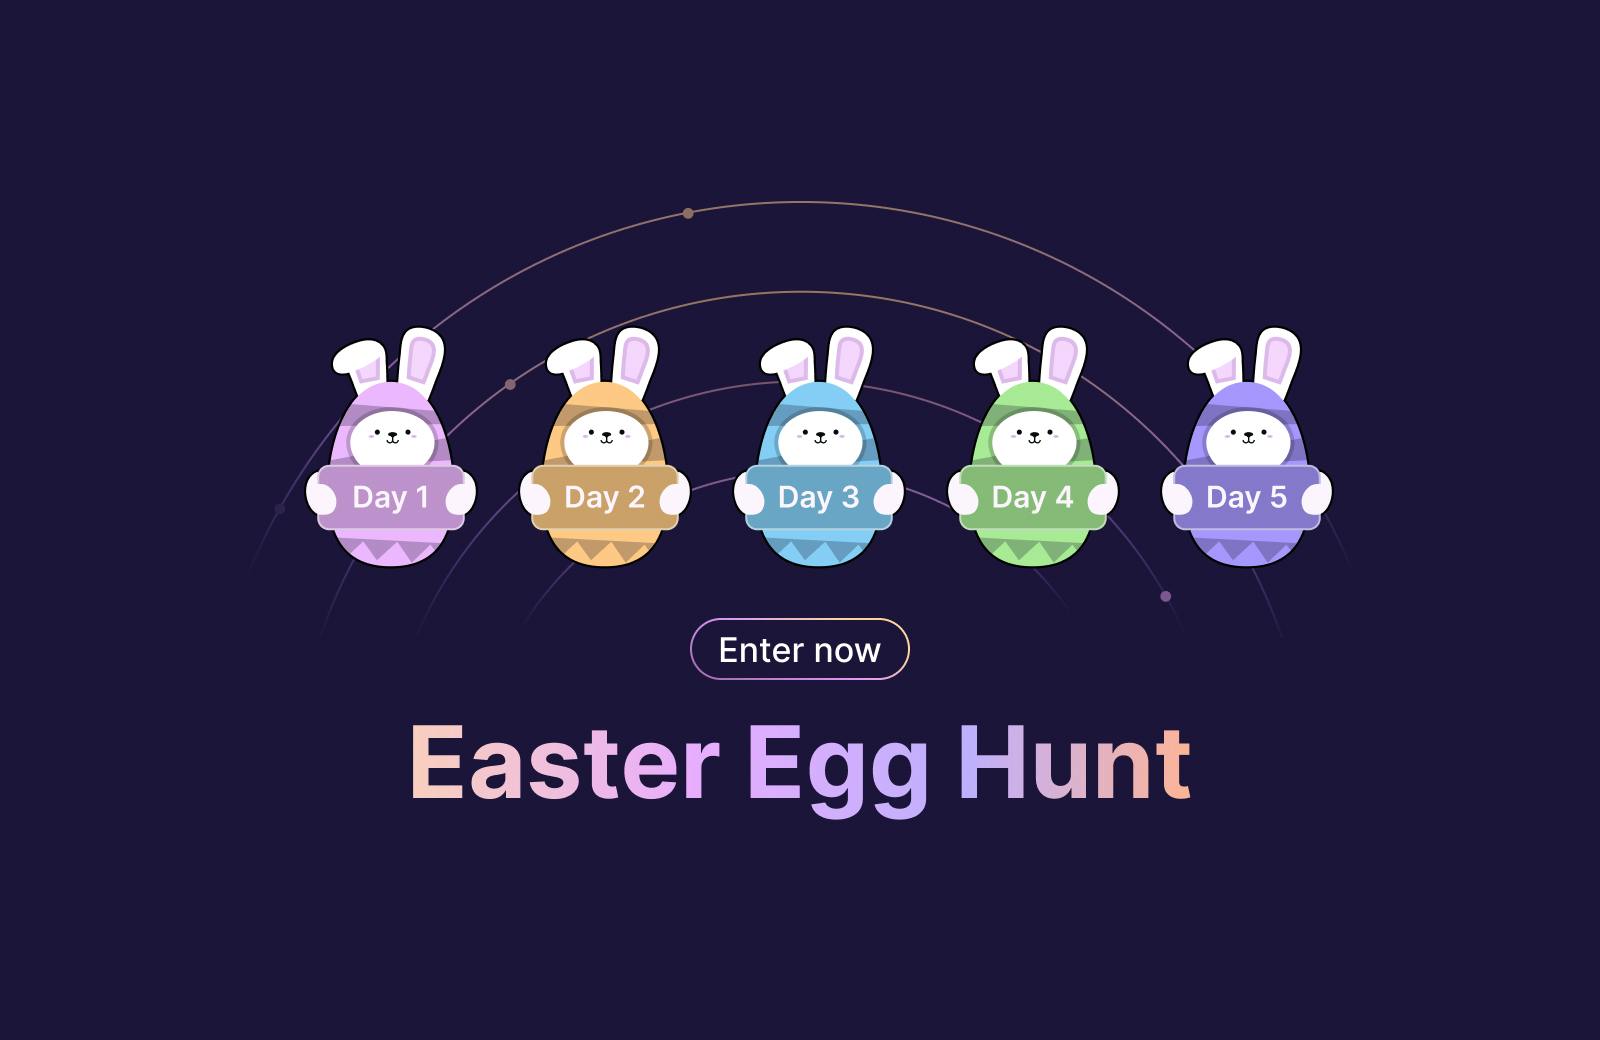 Launch Week Easter Egg Hunt